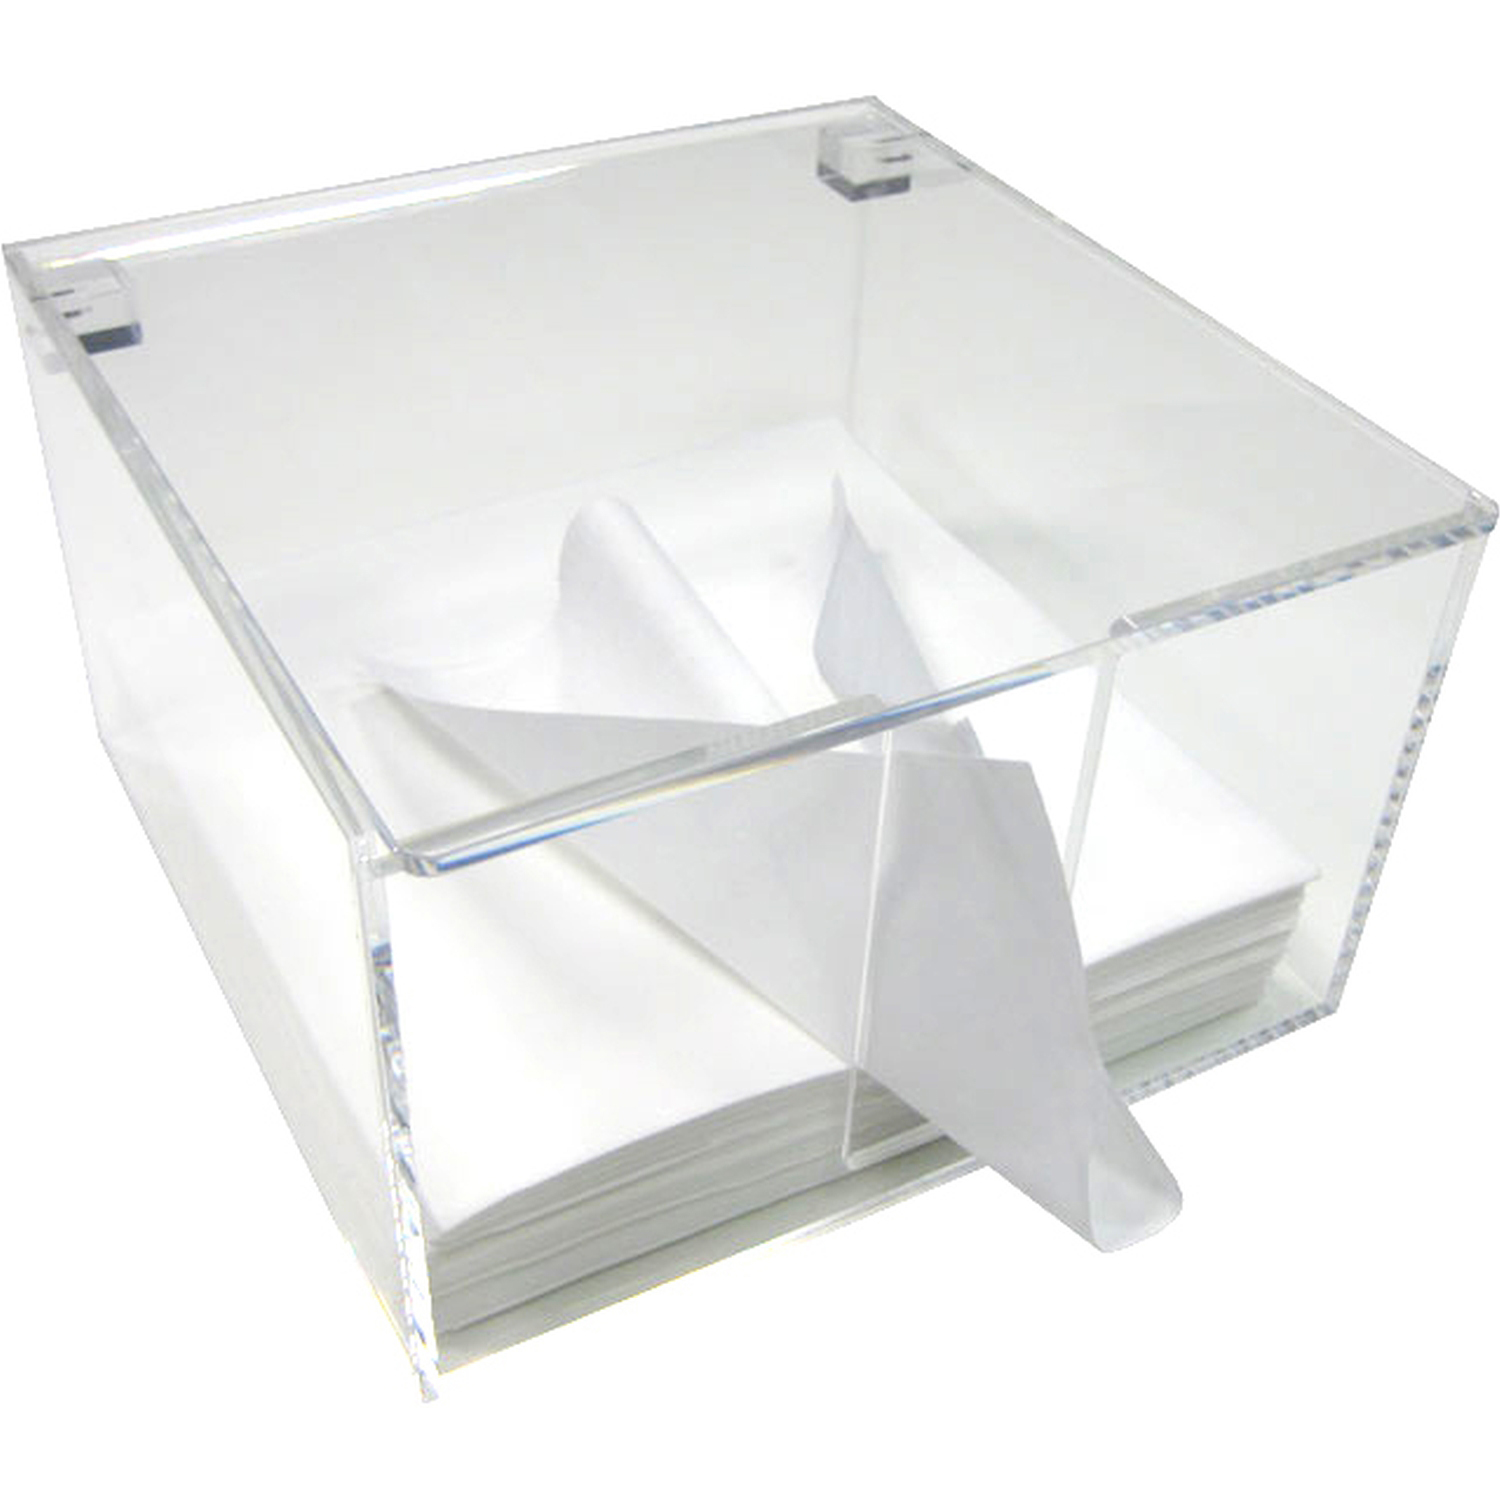 Acrylglas-Spenderbox mit Deckel für Tücher